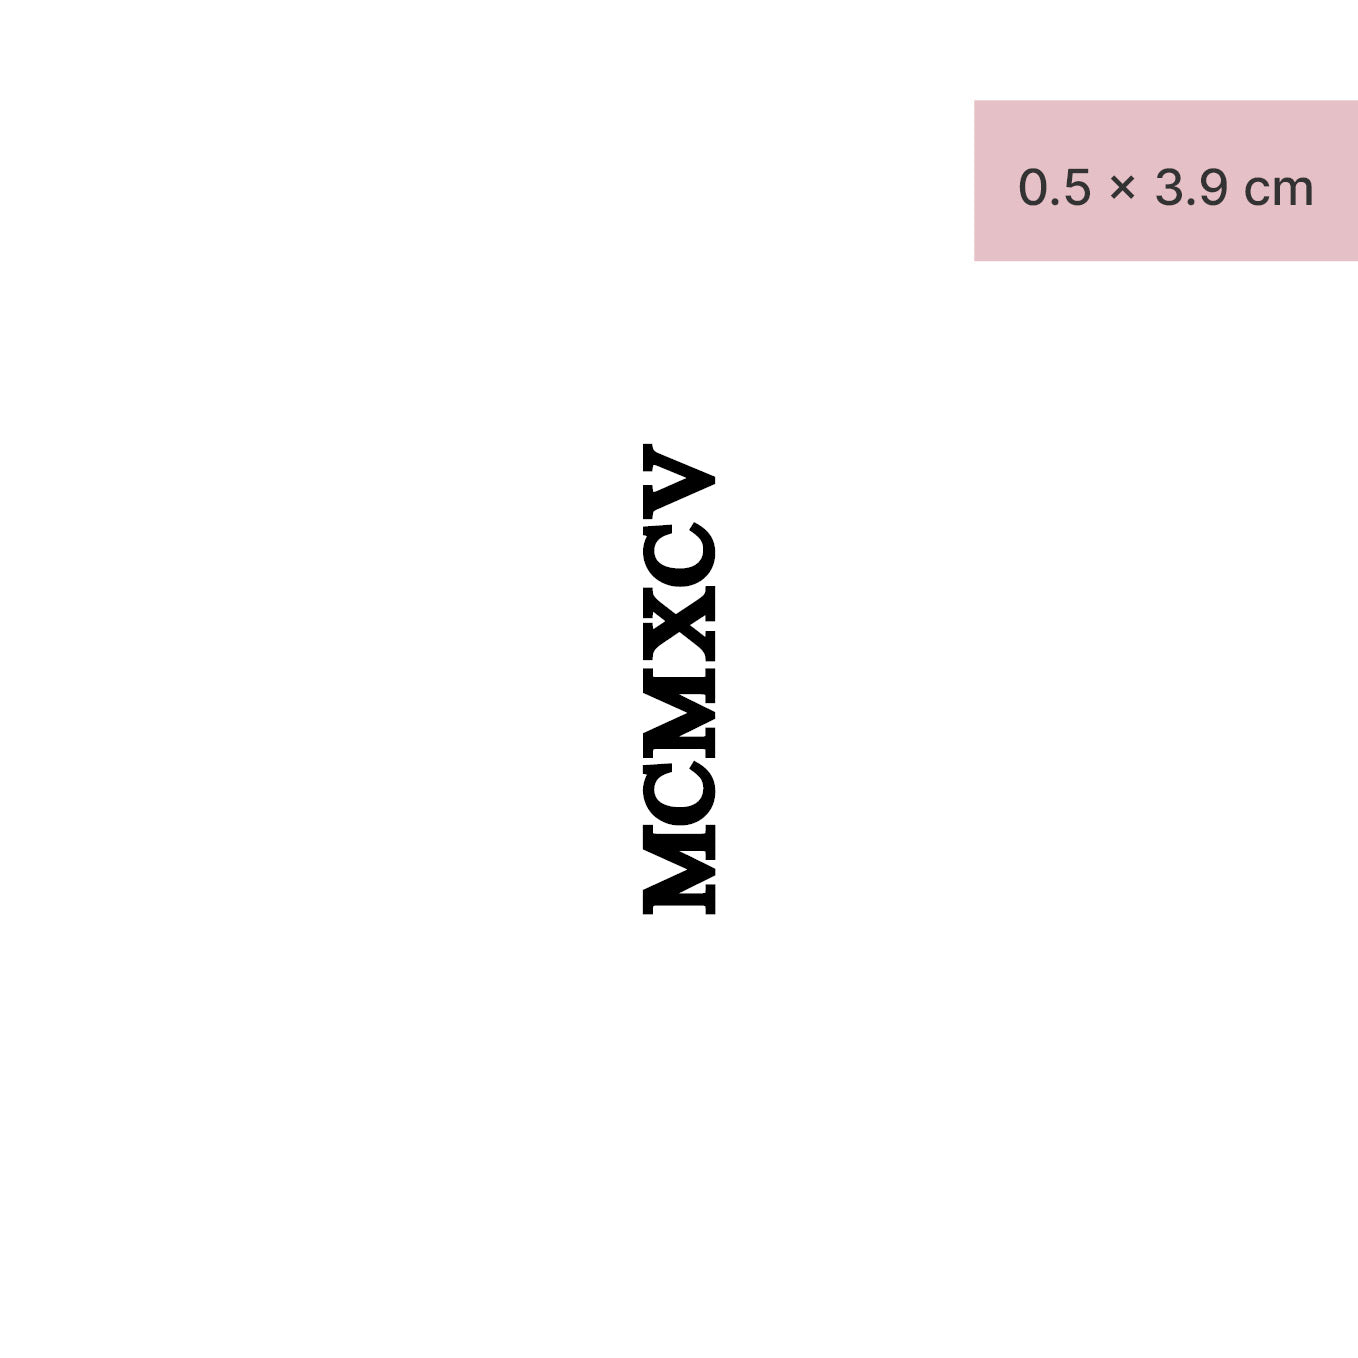 Zahlen Tattoo Römische Zahl MCMXCV (1995) von minink, der Marke für temporäre Tattoos.